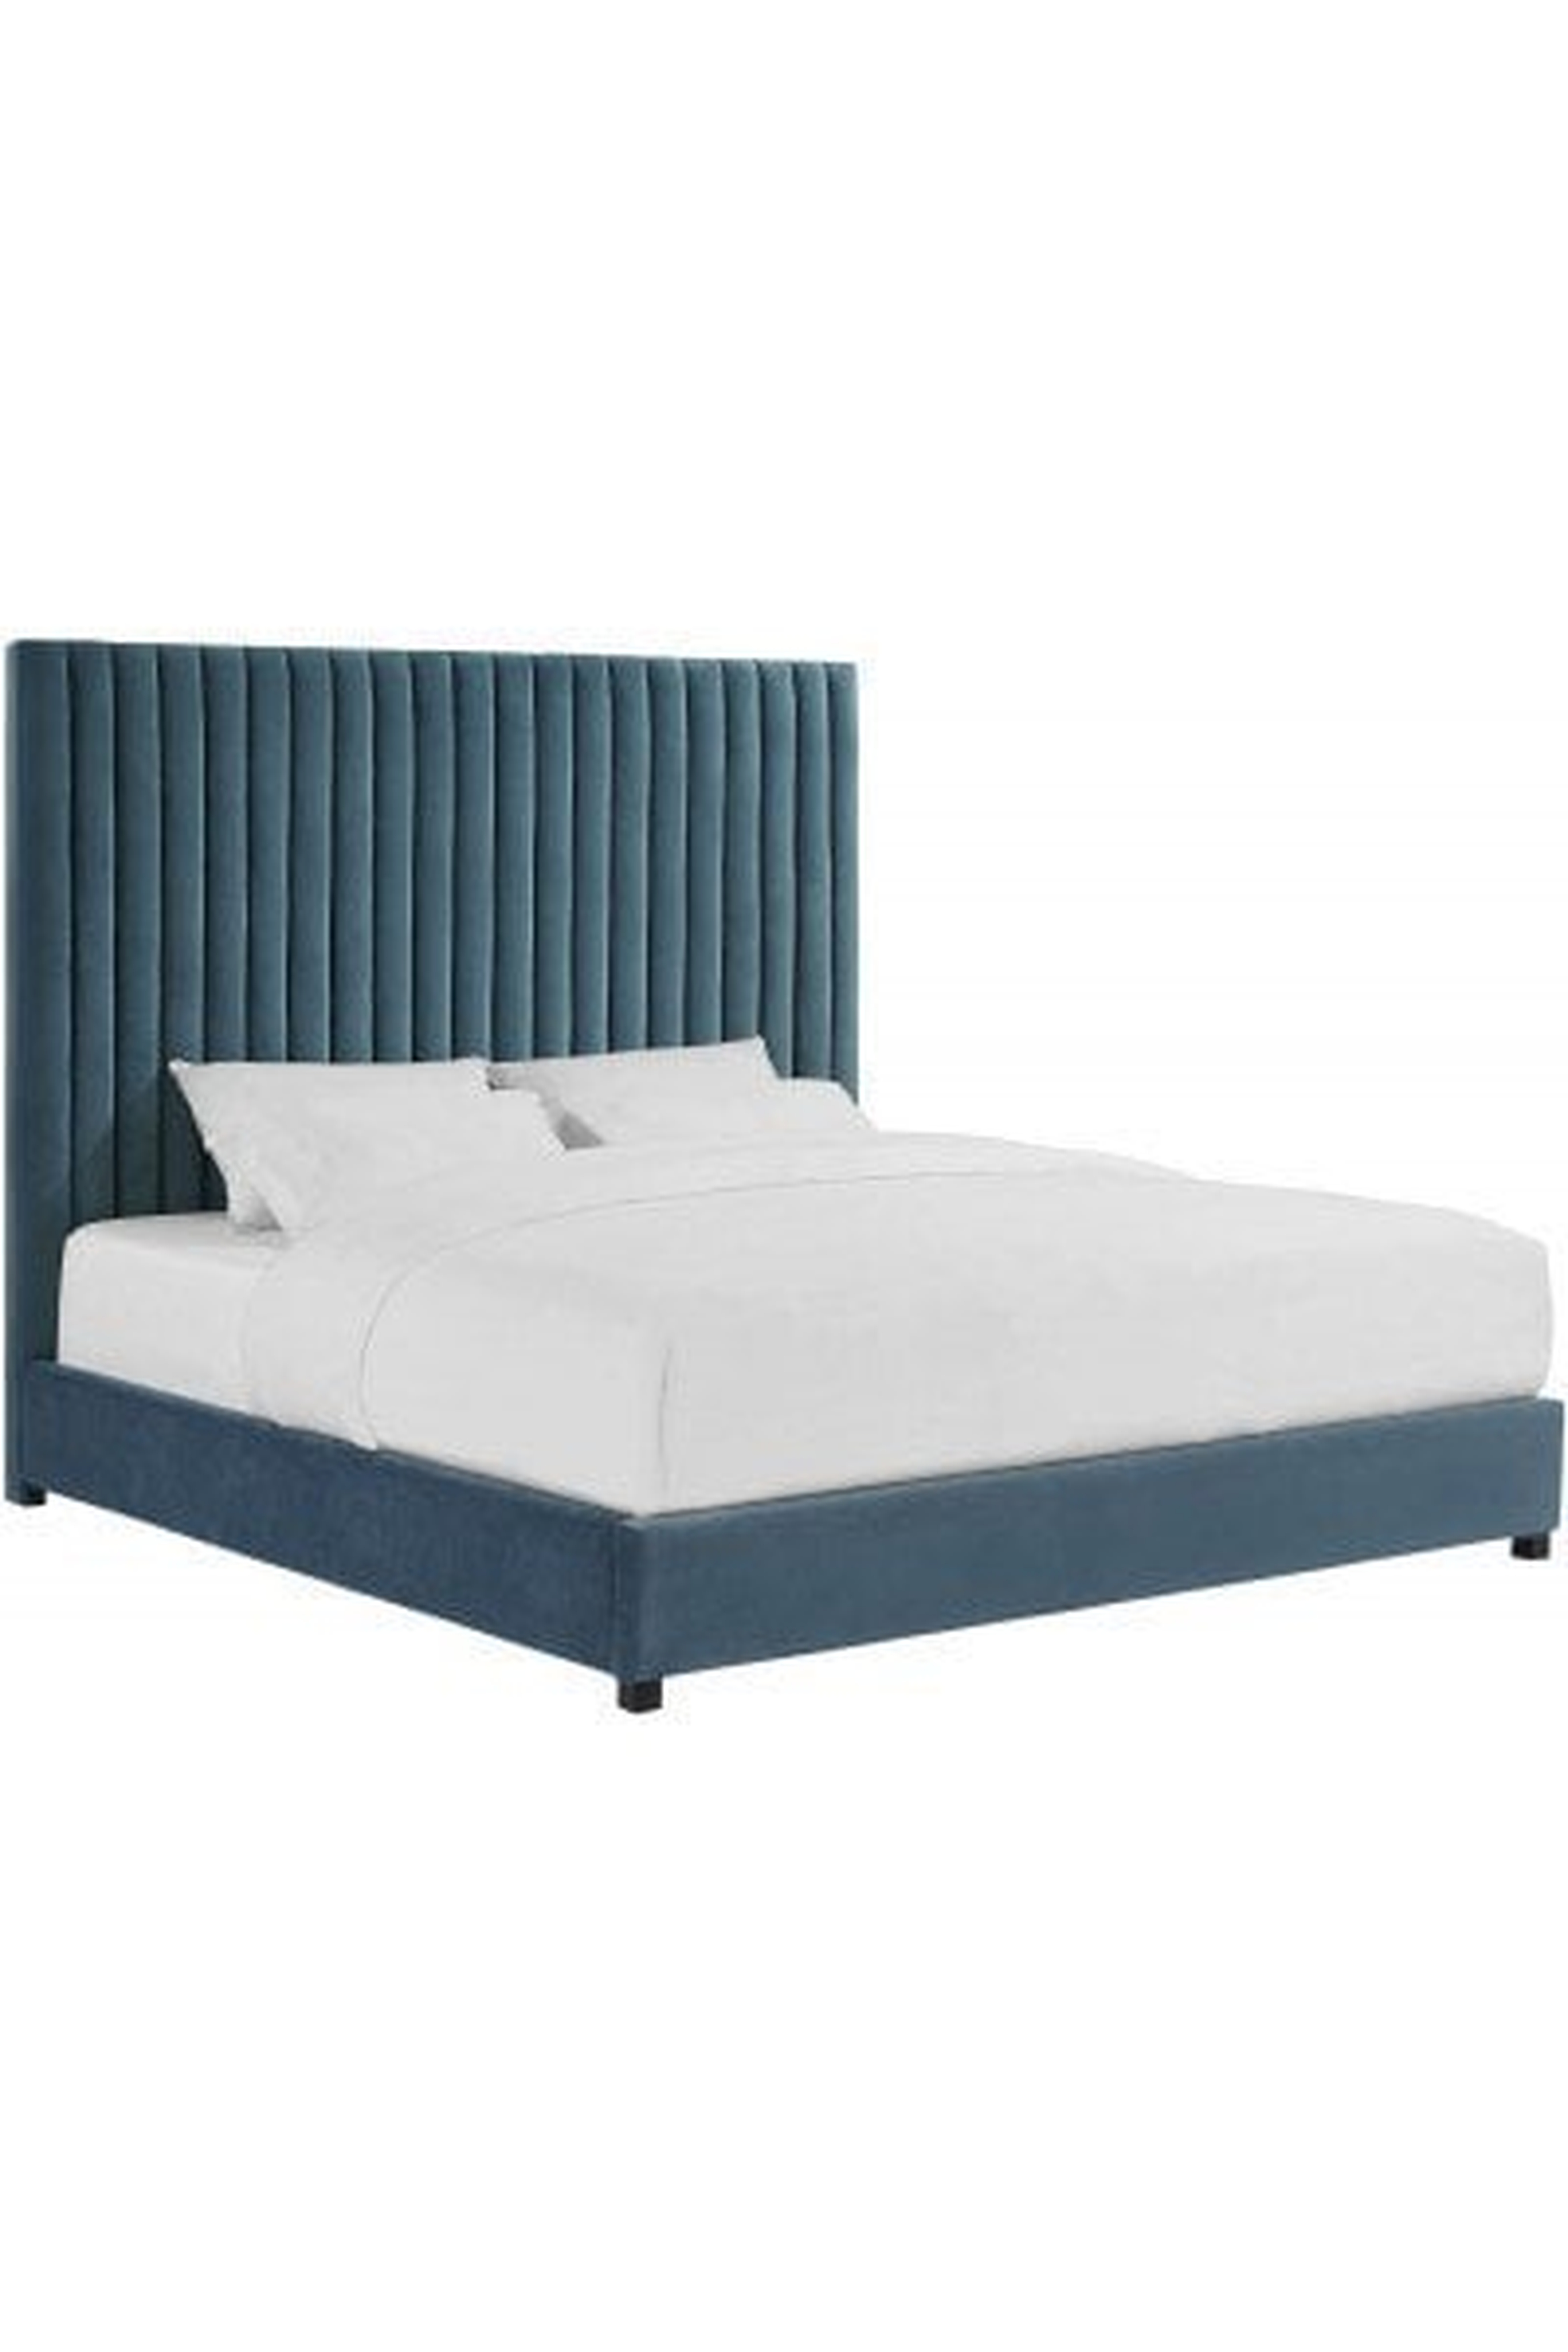 Arabelle Sea Blue Bed in Queen - Maren Home